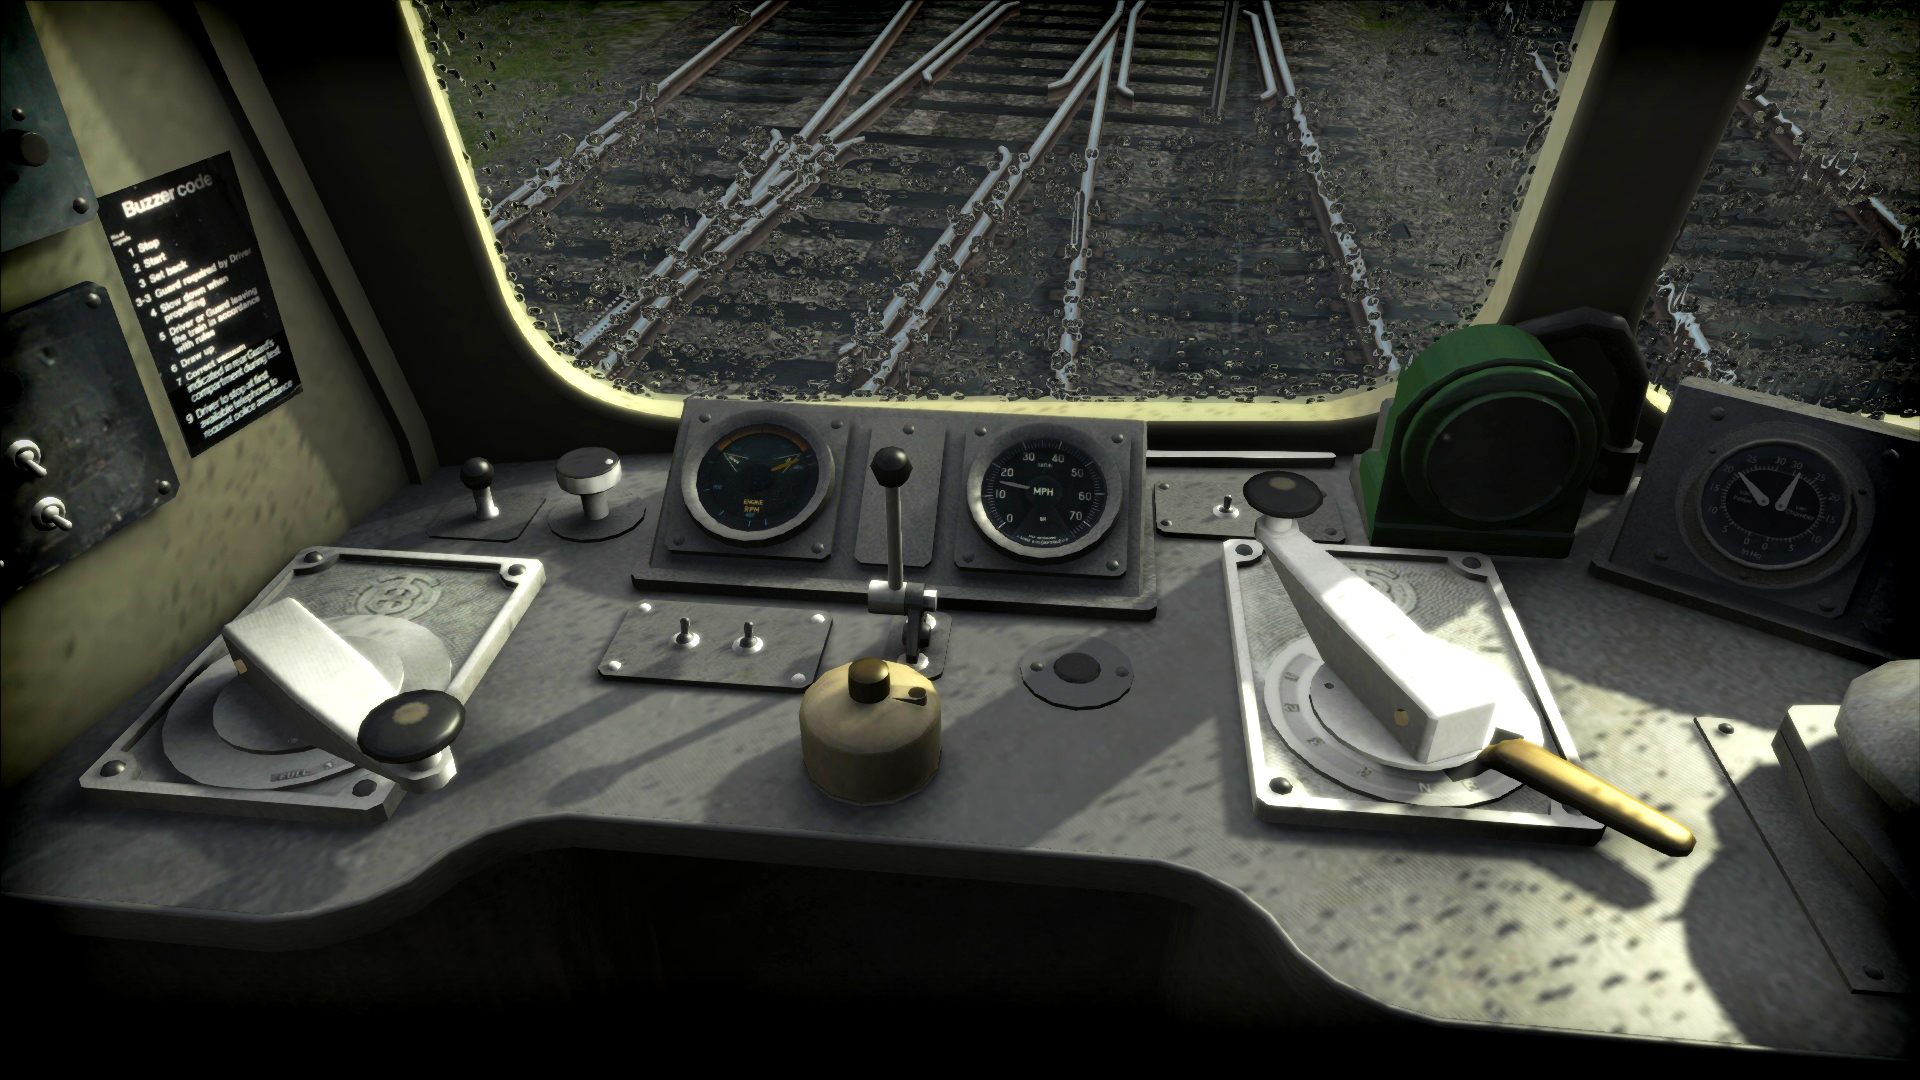 Train Simulator: Weardale & Teesdale Network Route Add-On screenshot